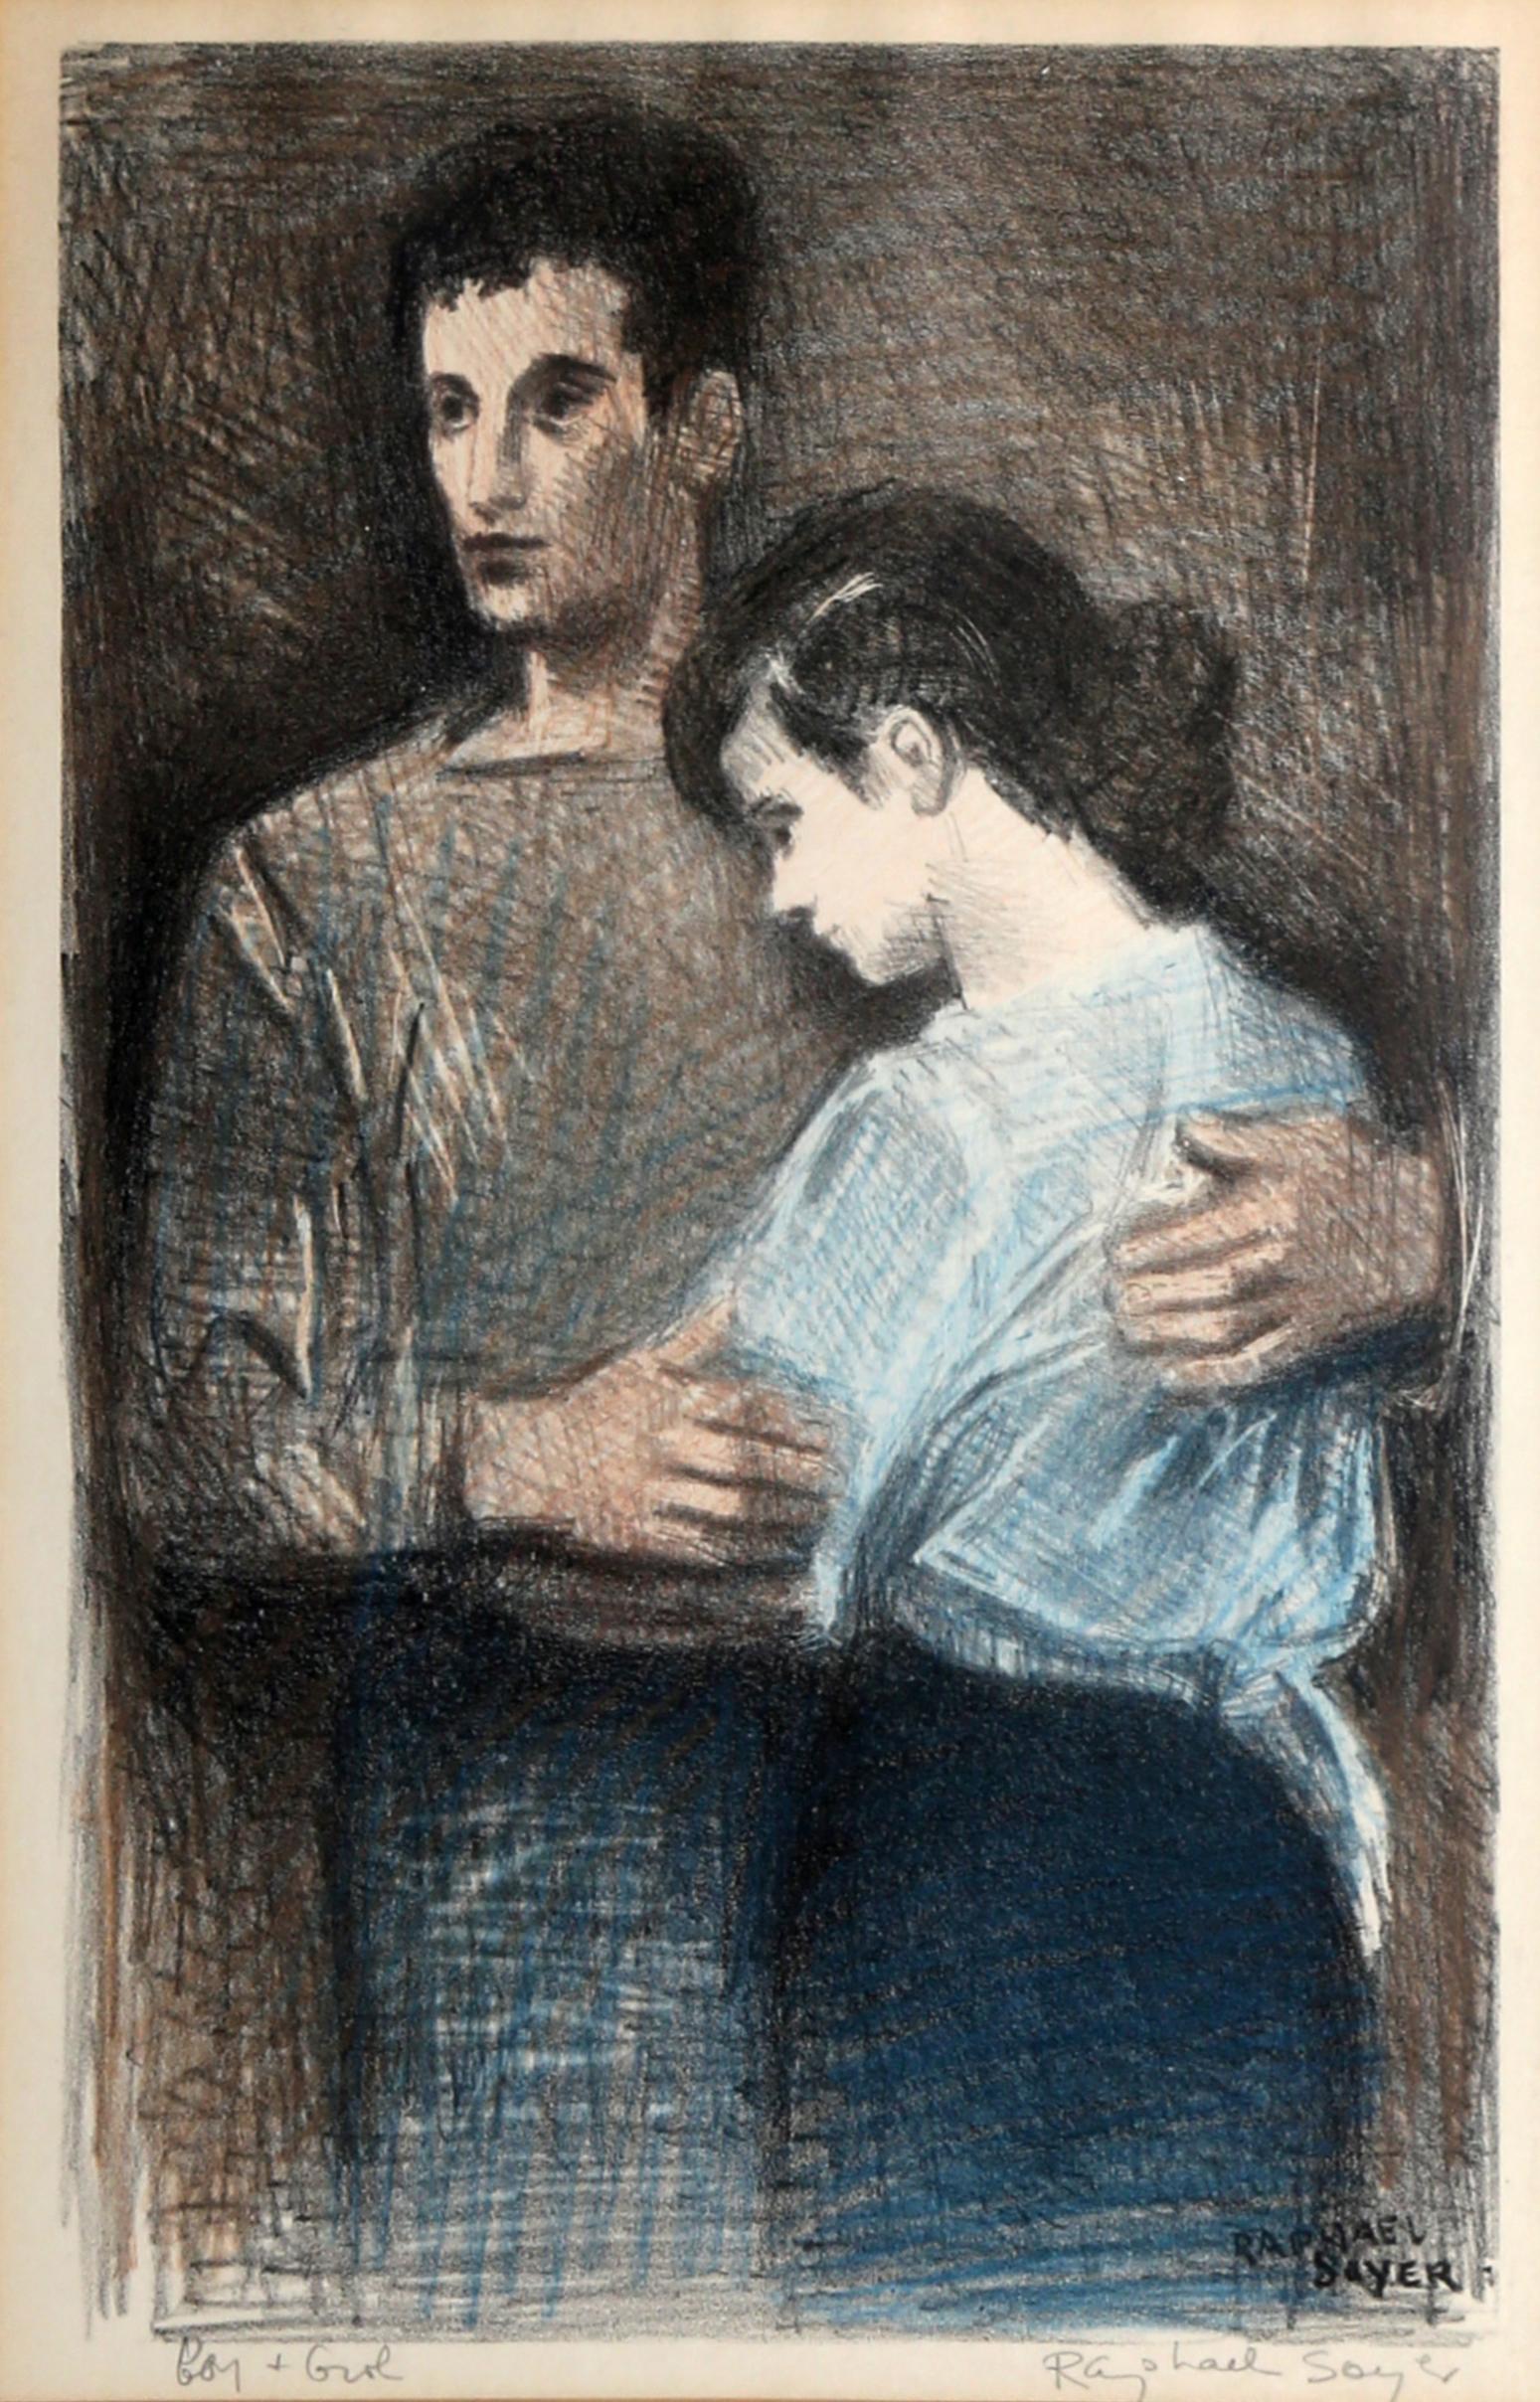 Artistics : Raphael Soyer
Titre : Garçon et fille
Année : vers 1950
Support : Lithographie sur papier, signée au crayon à gauche.
Taille de l'image : 12 x 7.5 in. (30.48 x 19.05 cm)
Taille du cadre : 21 x 15.5 pouces

Référence : Fig. 68 dans